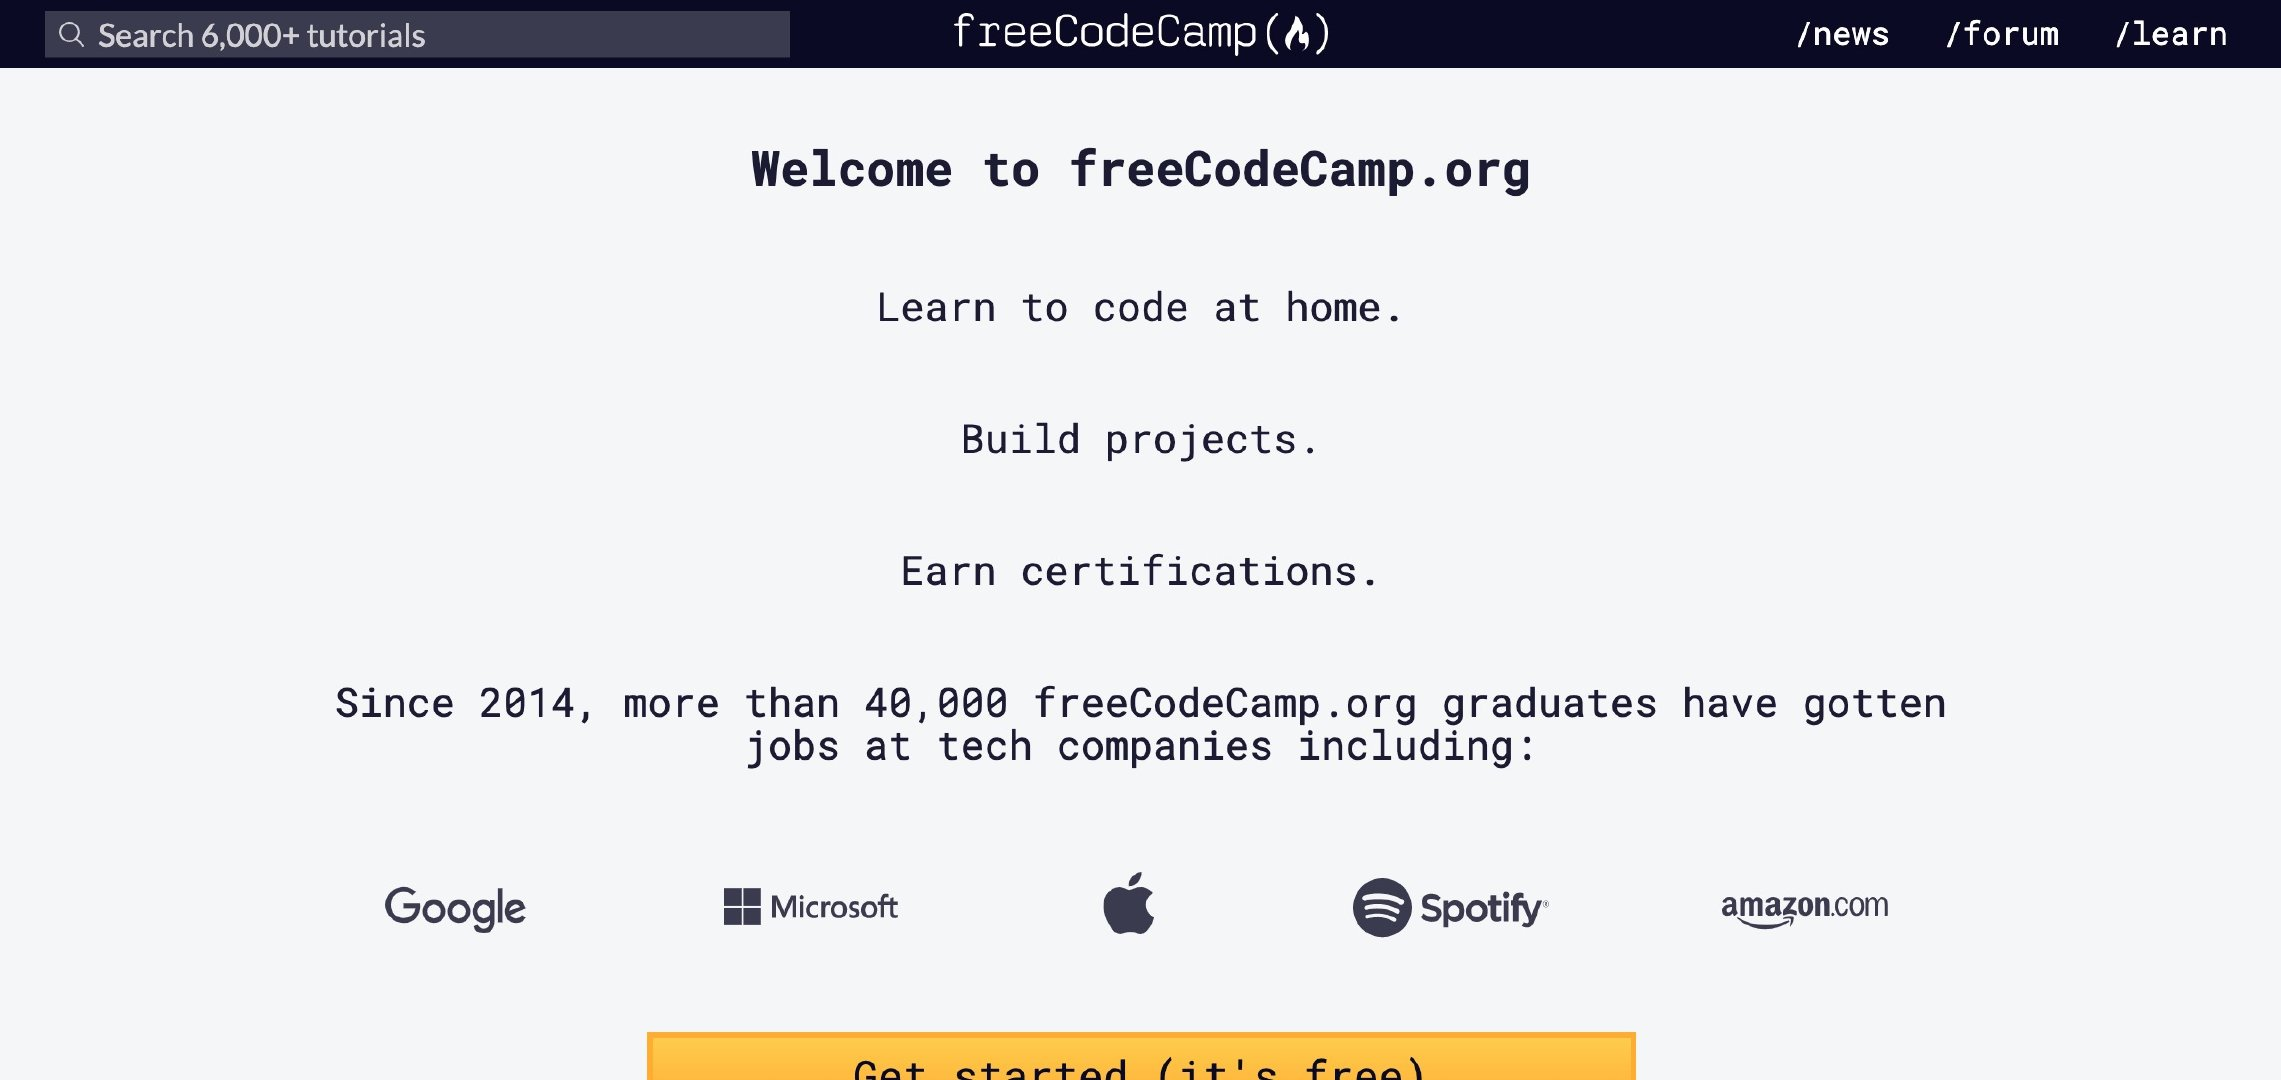 www.freecodecamp.org